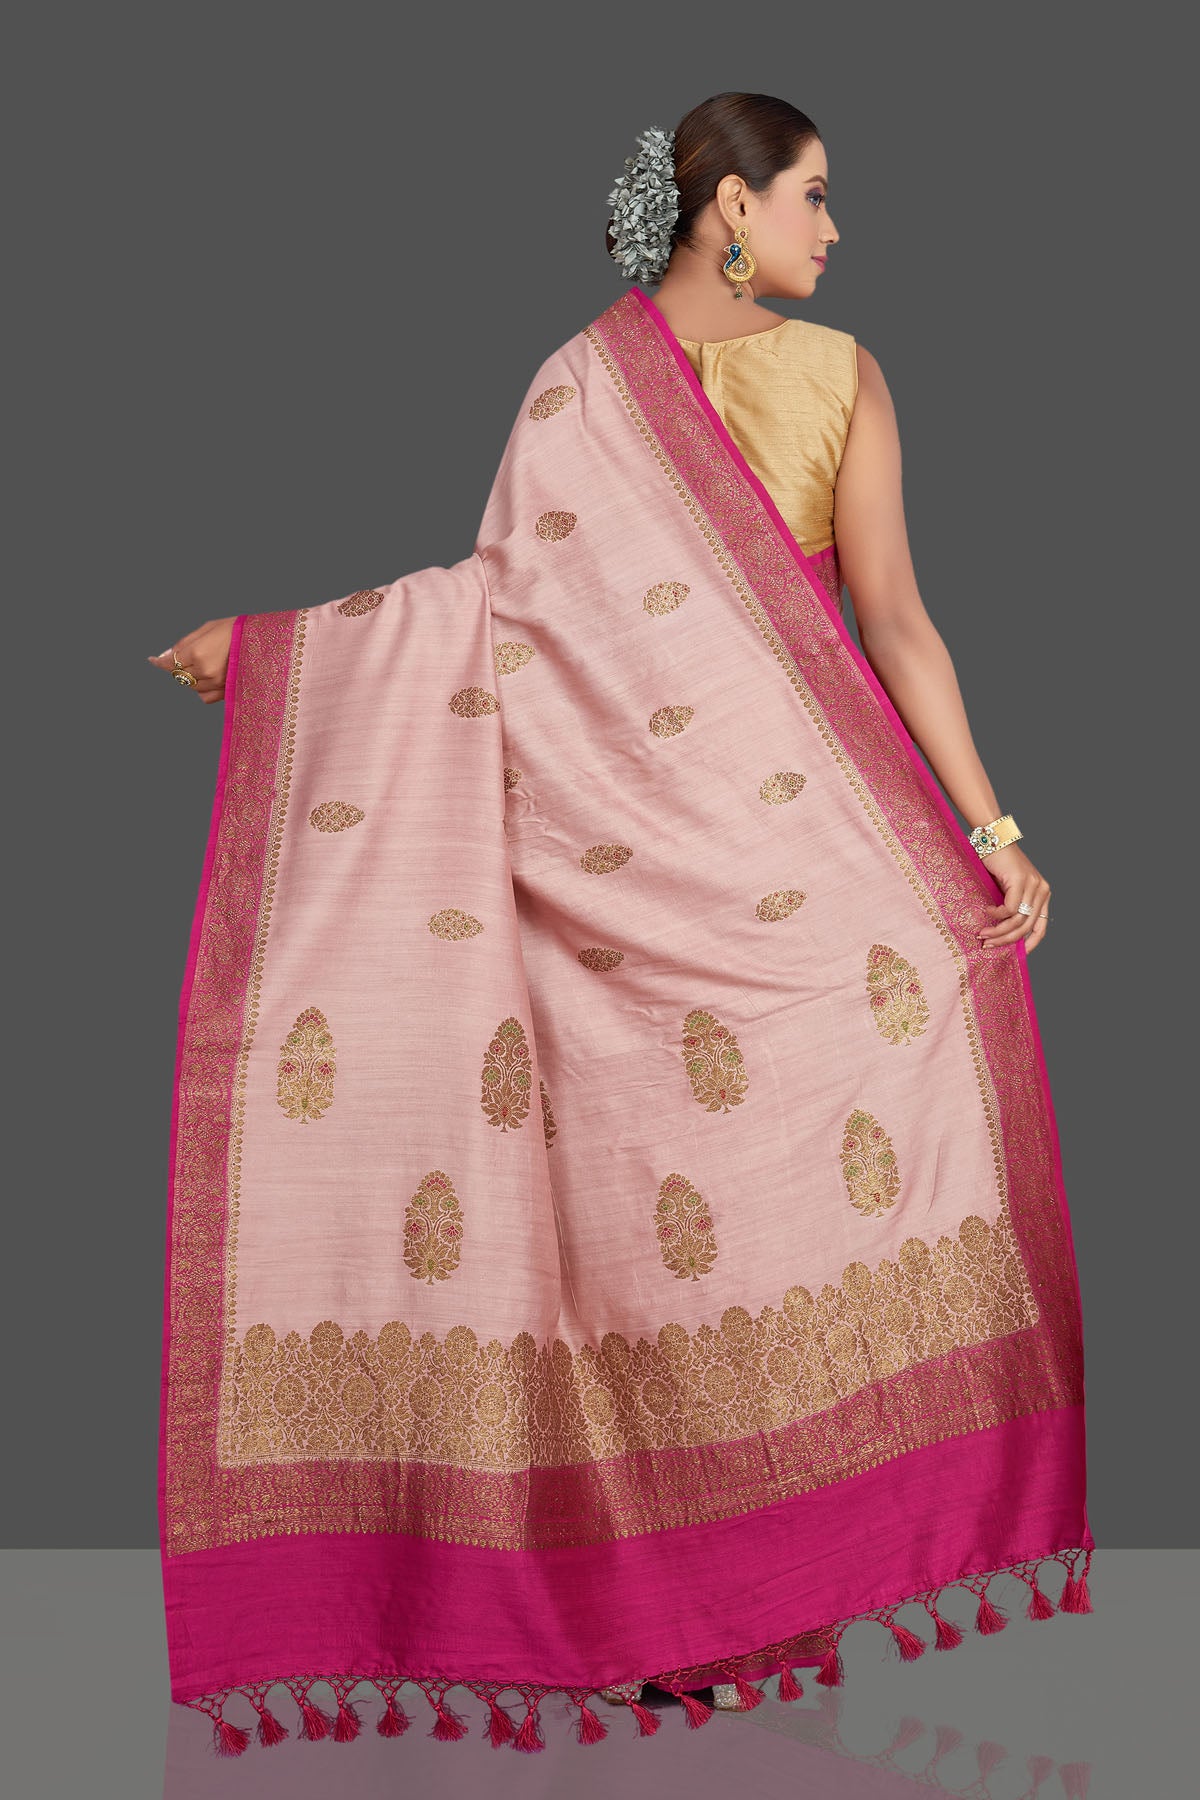 Buy beautiful light pink tussar Banarasi saree online in USA with dark pink border. Look your best on special occasions with stunning Banarasi saris, pure silk saris, tussar sarees, handwoven sarees from Pure Elegance Indian saree store in USA.-back